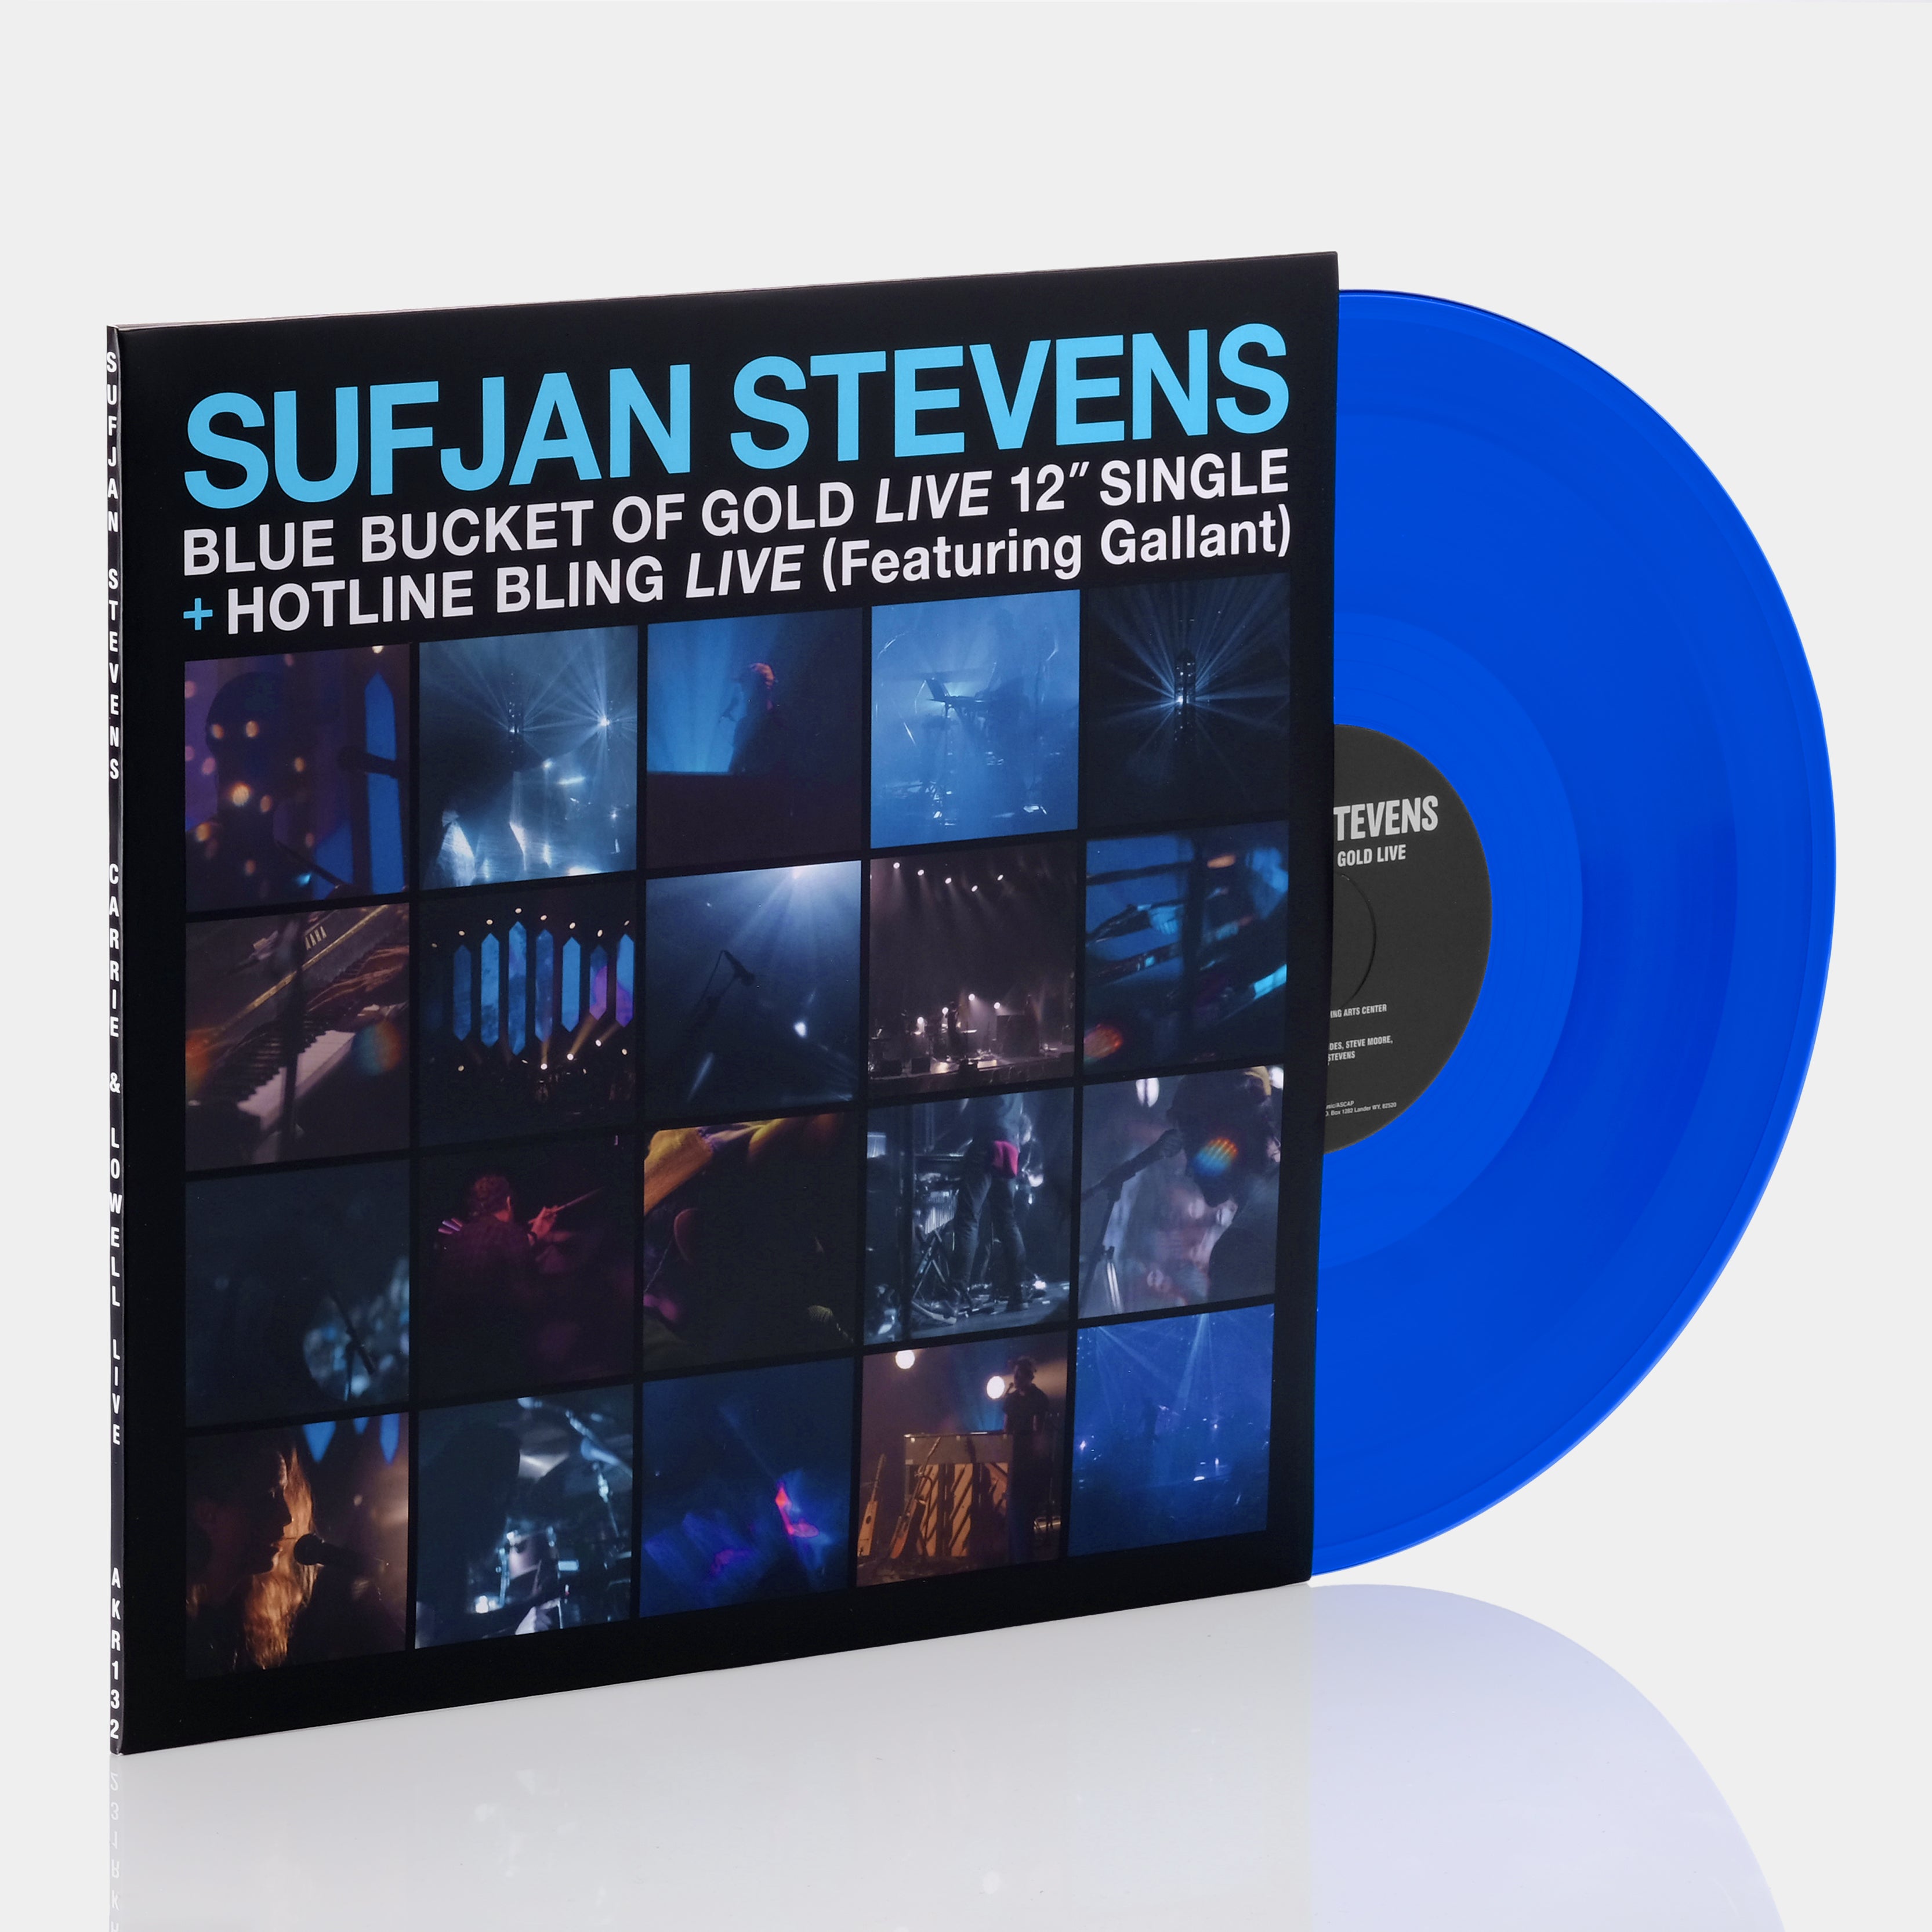 Sufjan Stevens - Blue Bucket Of Gold (Live) / Hotline Bling (Live) Single LP Translucent Blue Vinyl Record